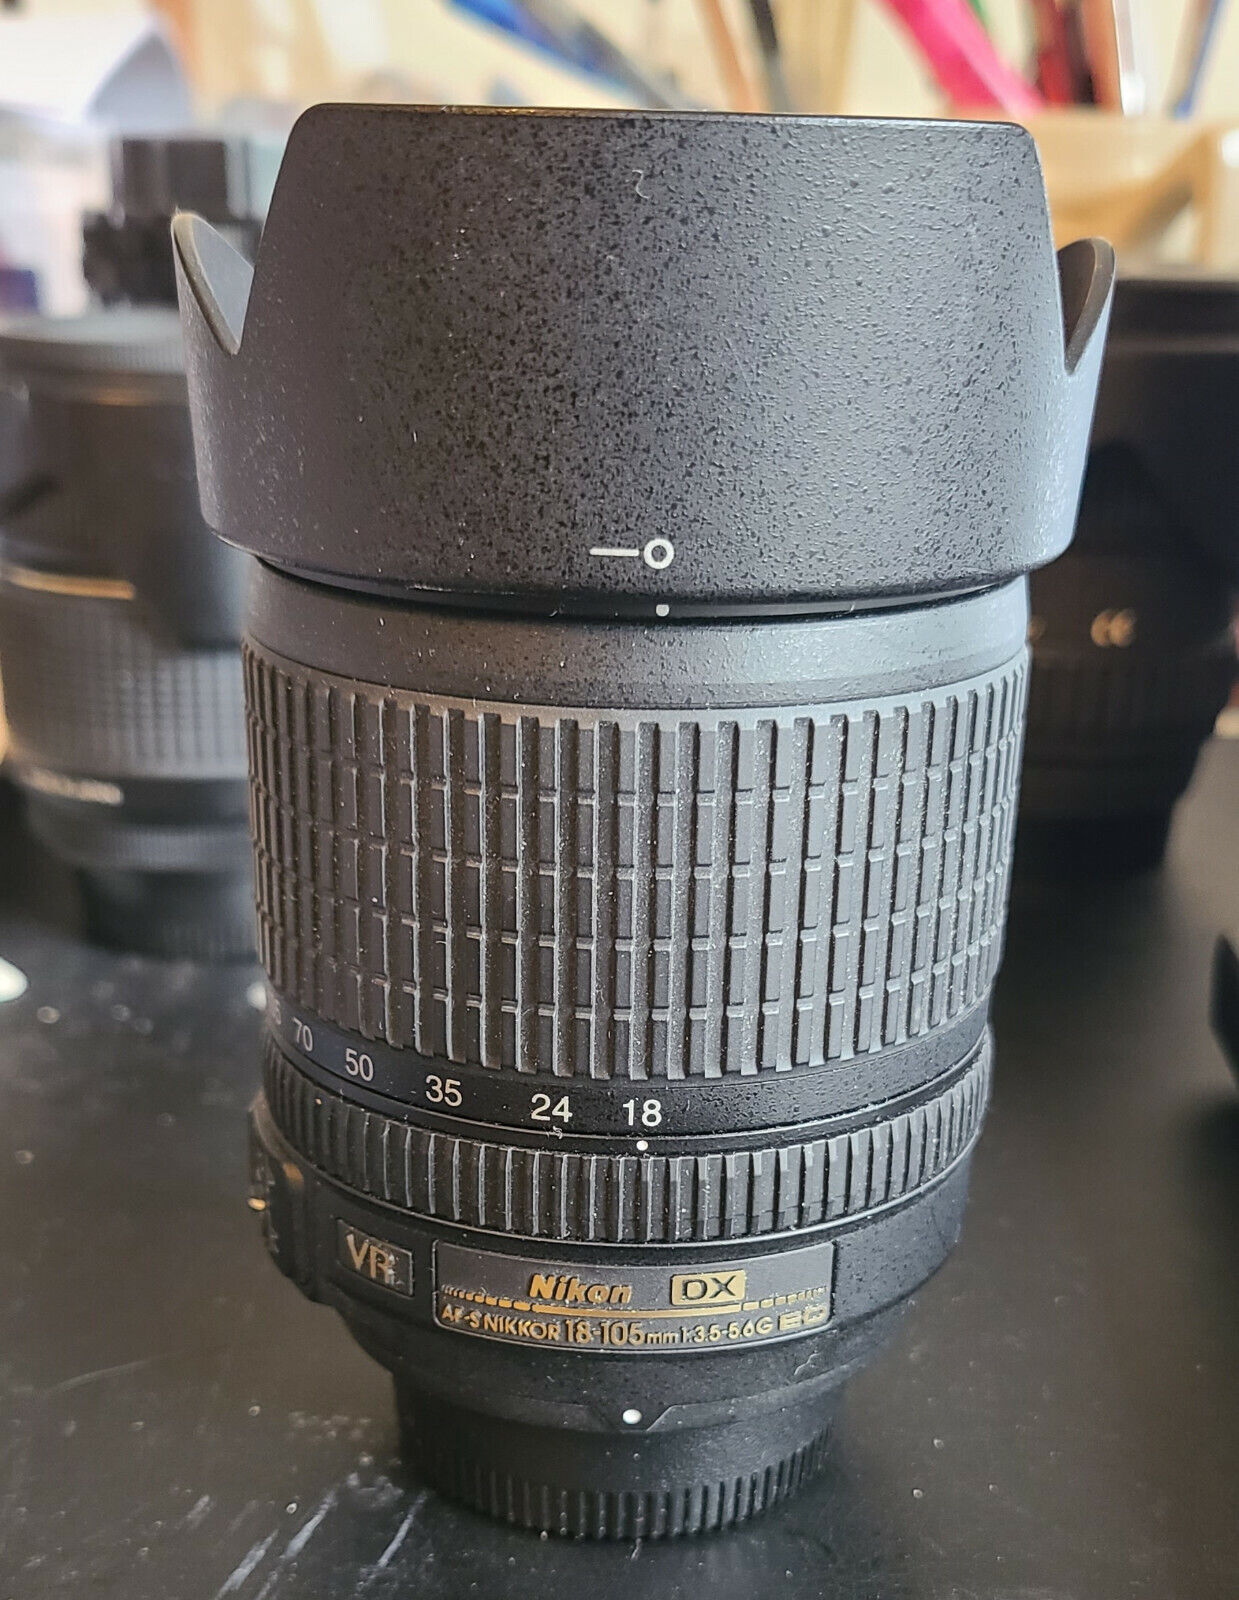 Nikon AF-S Nikkor 18-105mm f/3.5-5.6 G ED DX VR